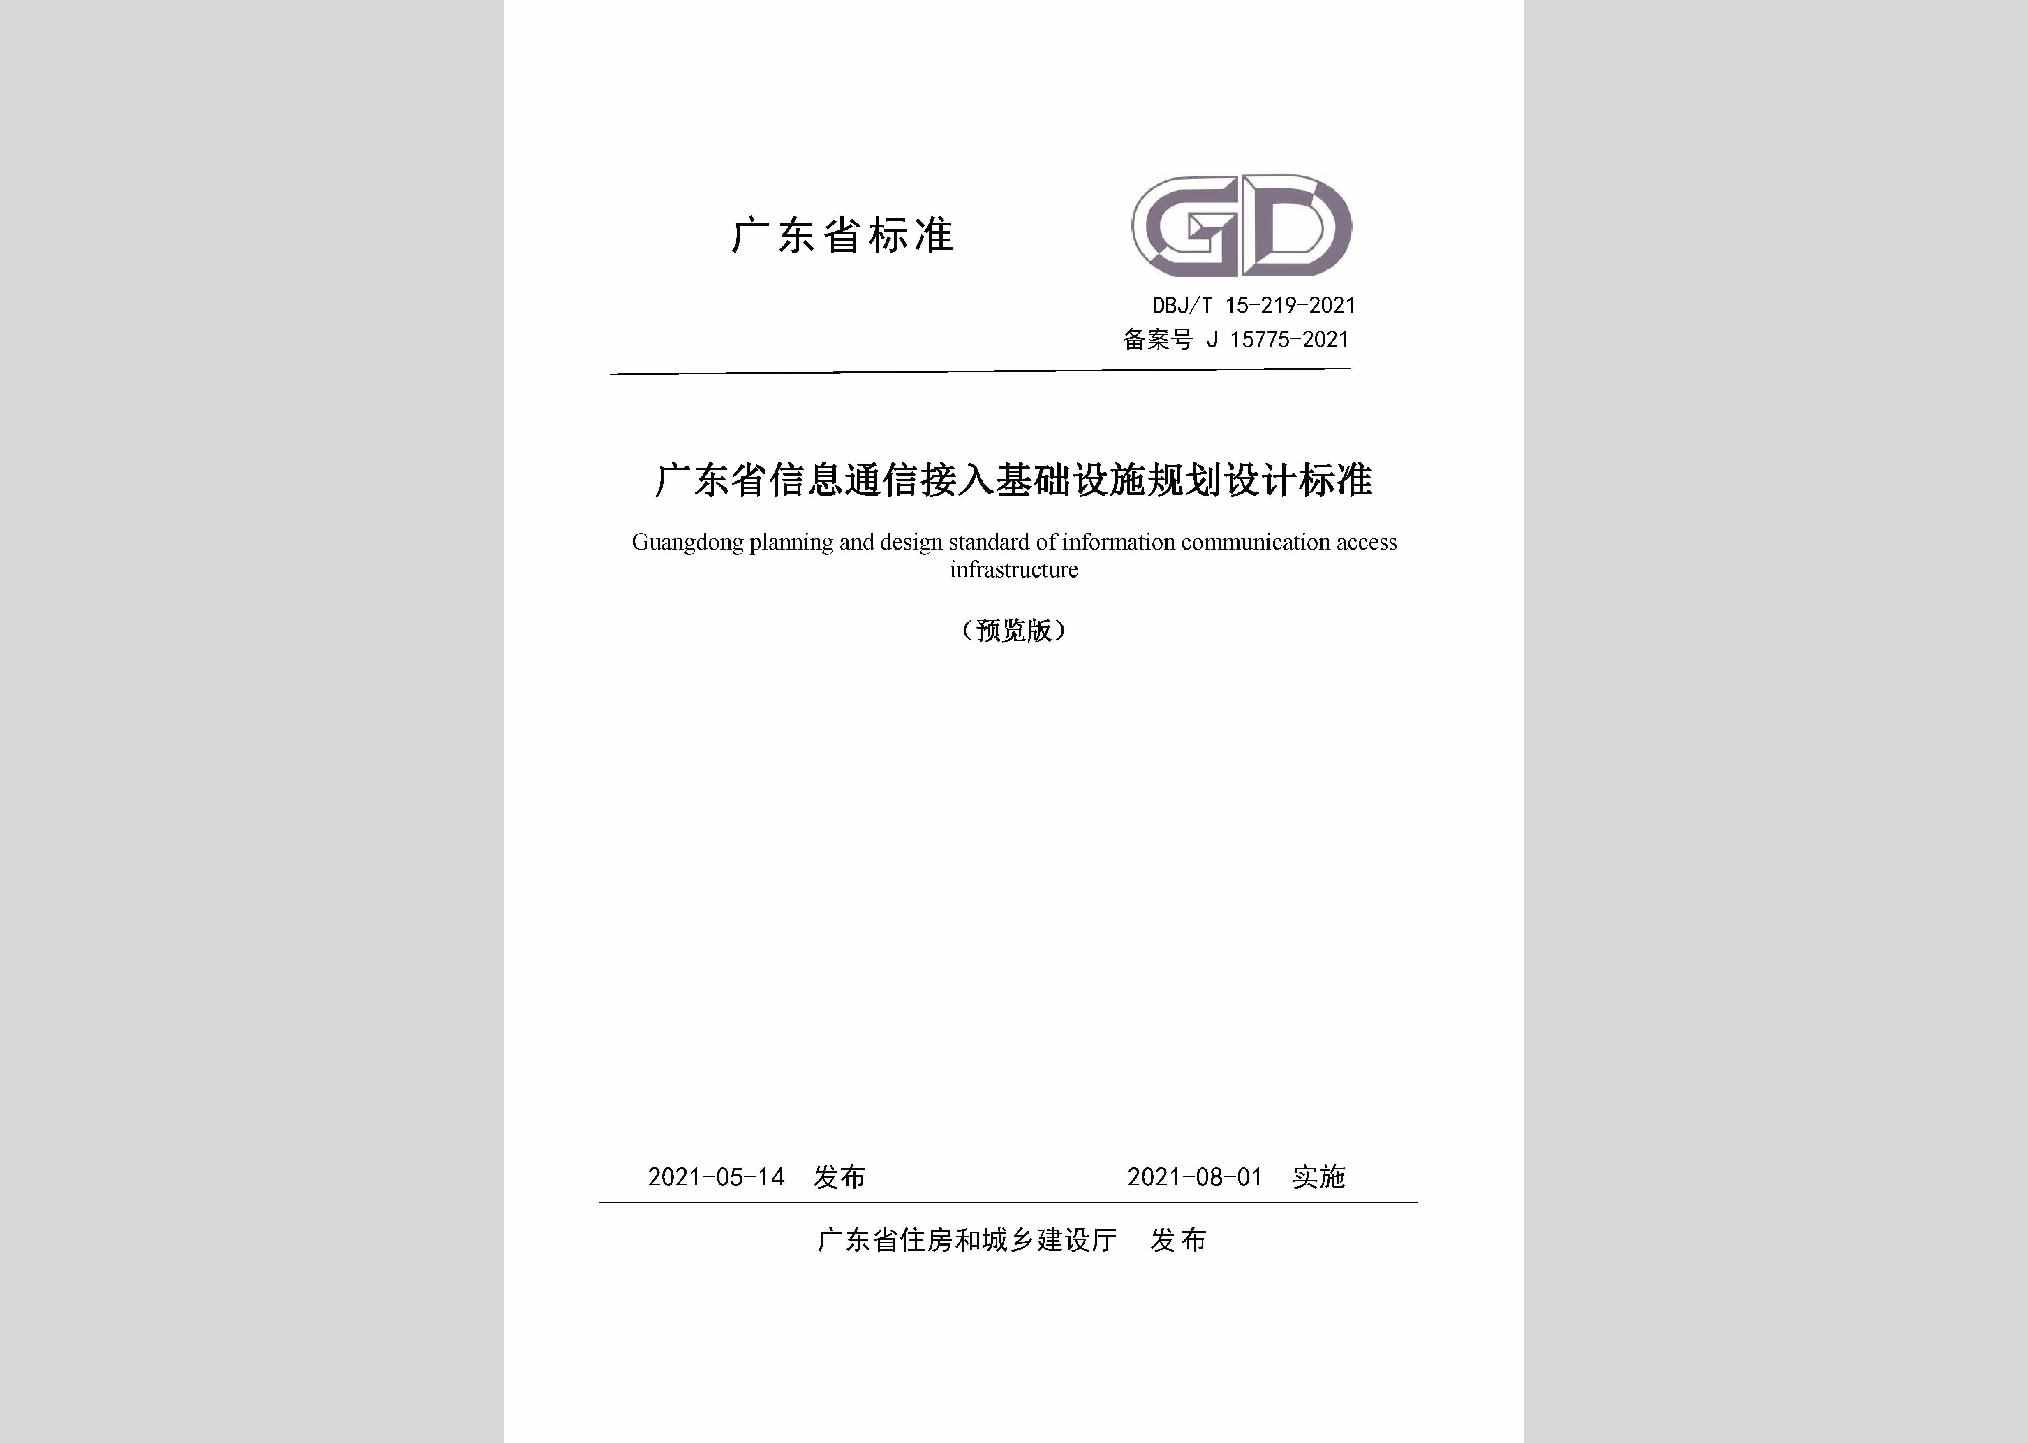 DBJ/T15-219-2021：广东省信息通信接入基础设施规划设计标准